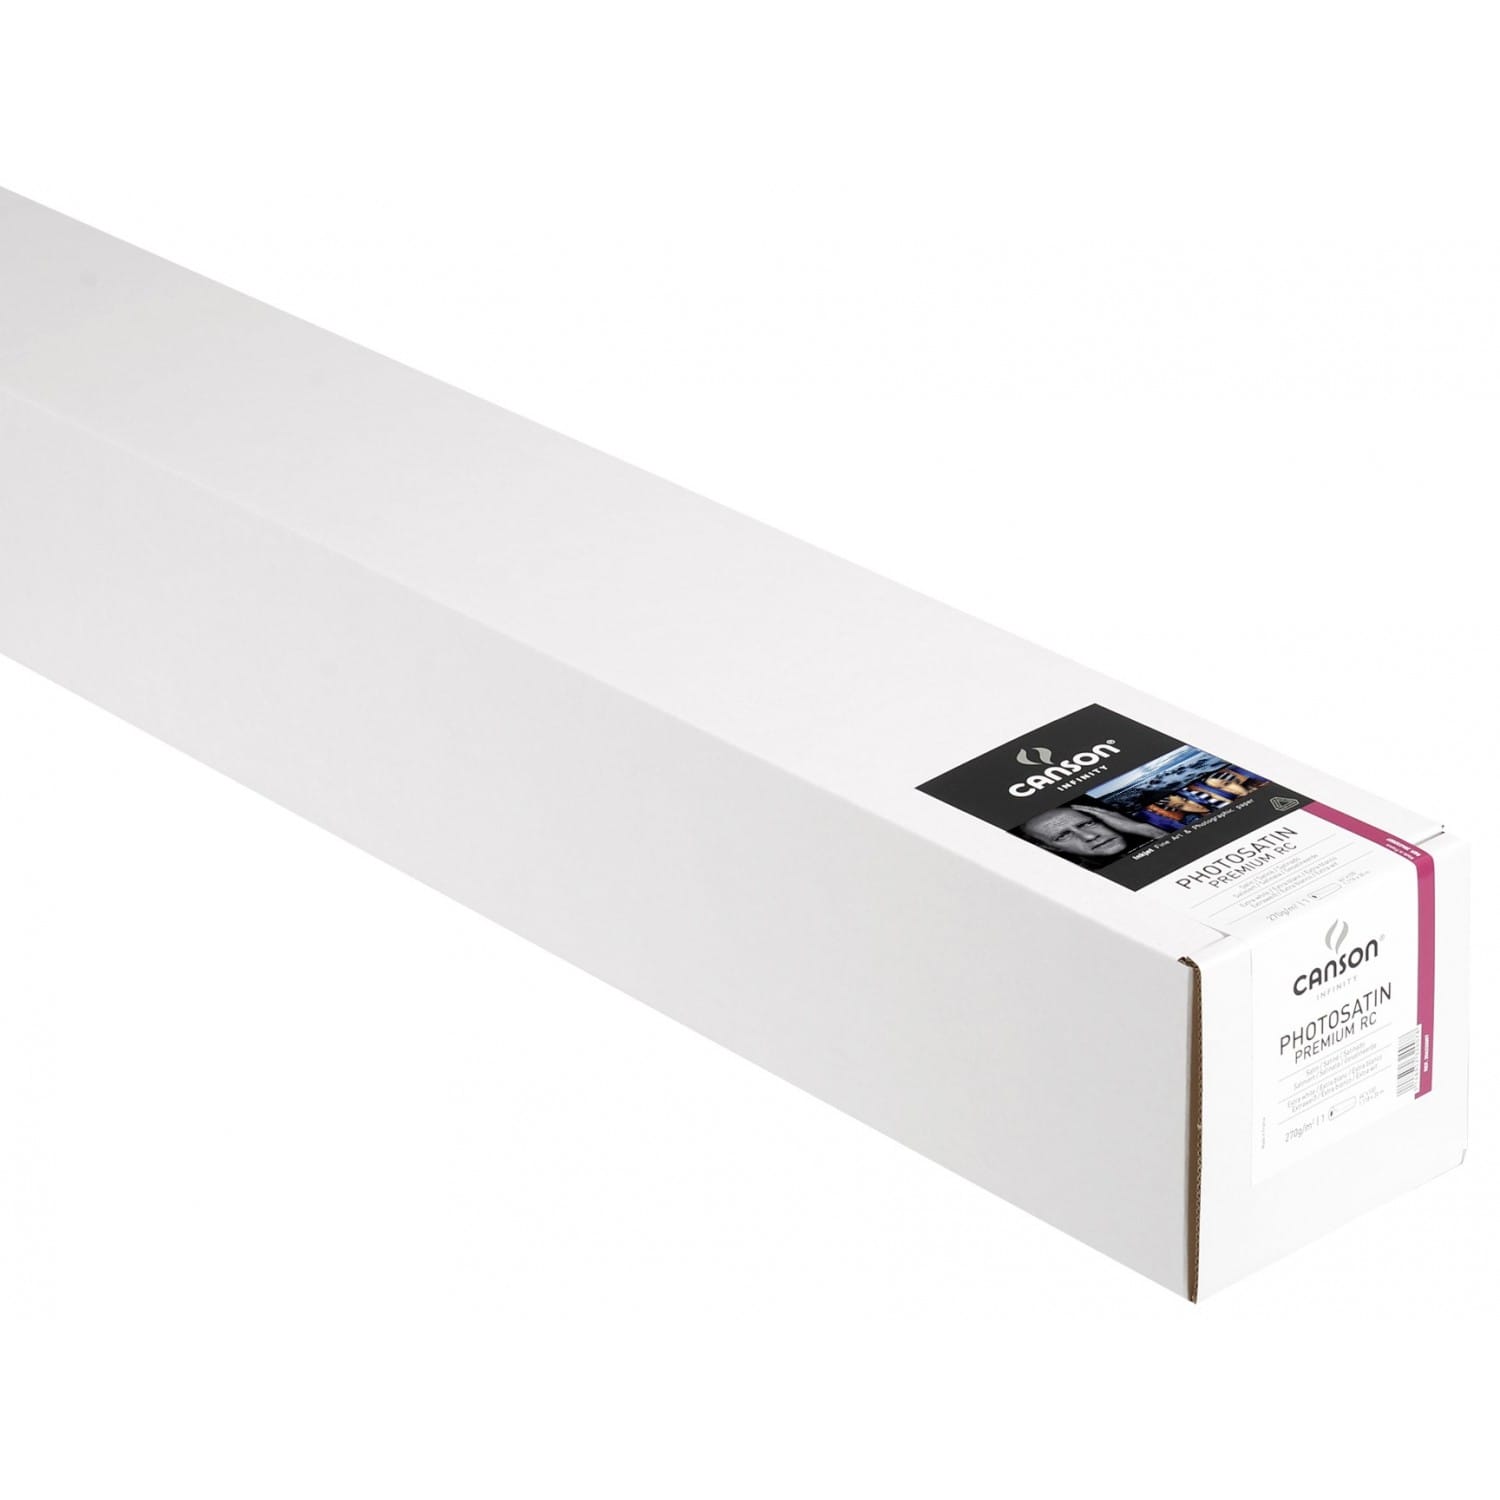 Papier Photo Format A4-25 feuilles 206231009 Satin Premium RC Canson infinity Blanc 